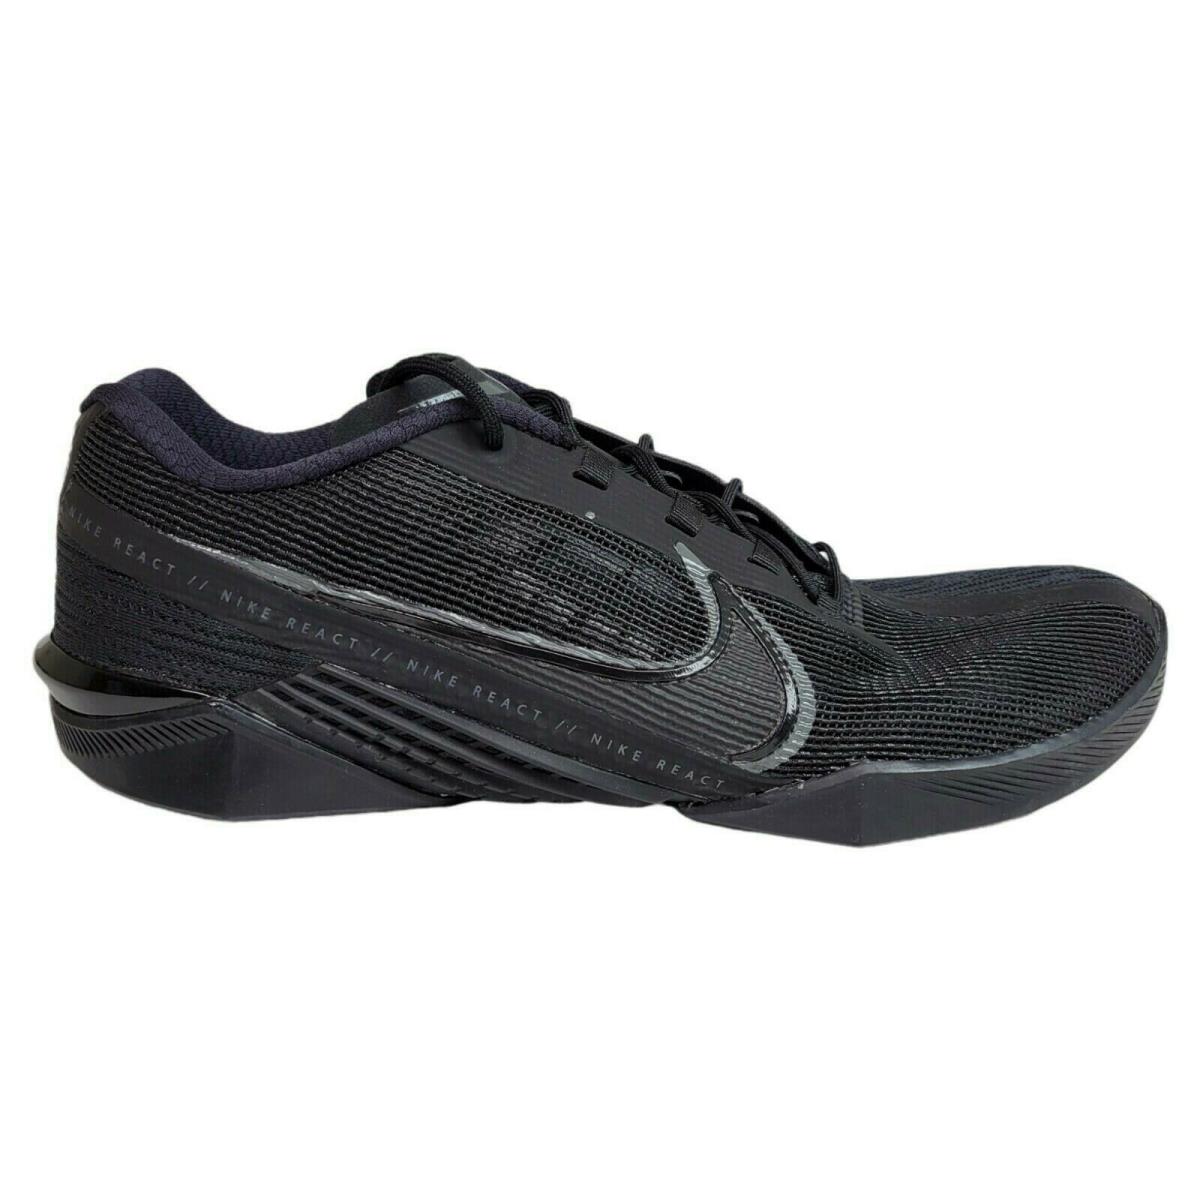 Nike Mens React Metcon Turbo Triple Black Training Crossfit Shoes CT1243-002 - Black